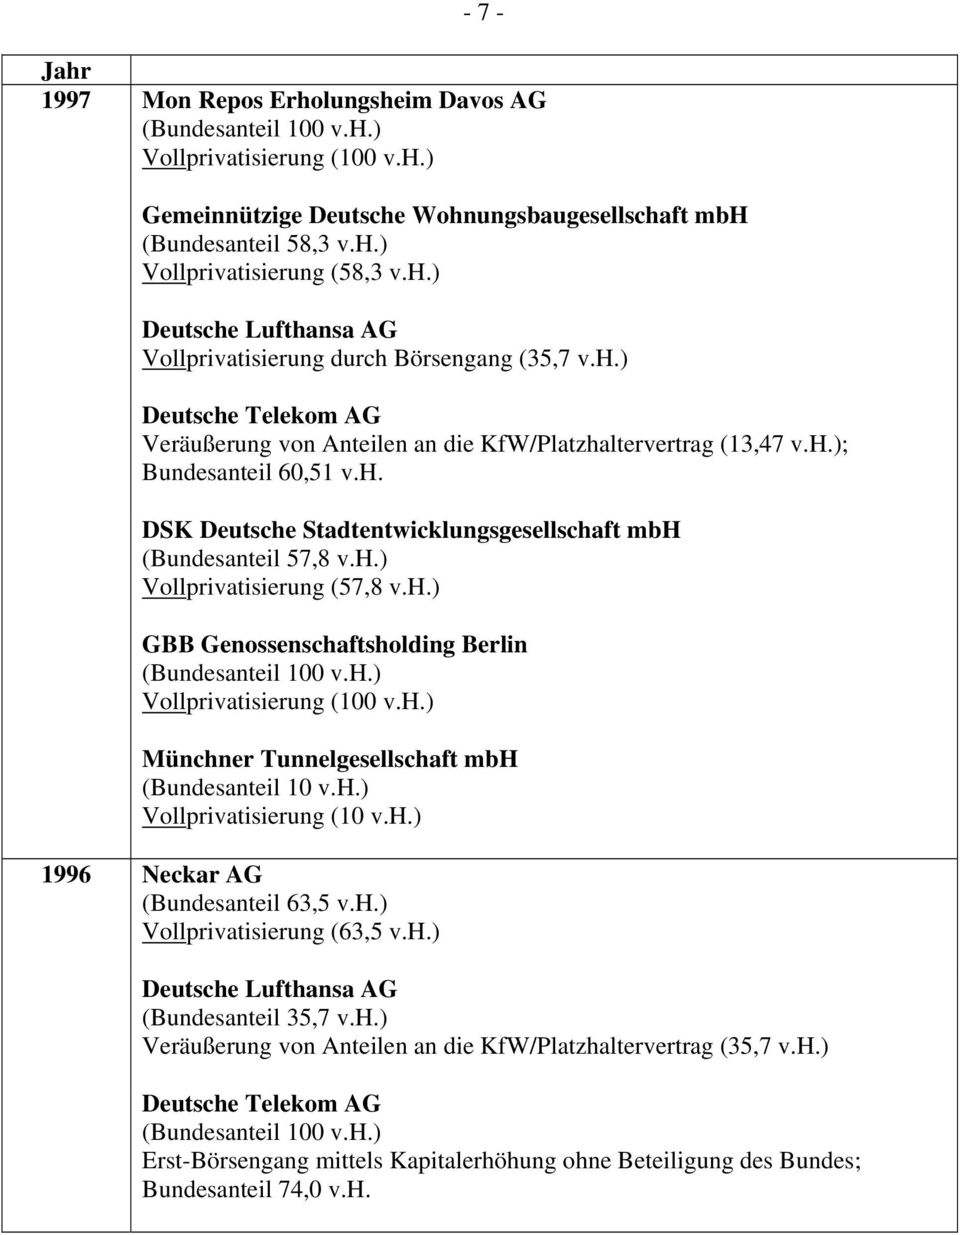 h.) Vollprivatisierung (10 v.h.) 1996 Neckar AG (Bundesanteil 63,5 v.h.) Vollprivatisierung (63,5 v.h.) Deutsche Lufthansa AG (Bundesanteil 35,7 v.h.) Veräußerung von Anteilen an die KfW/Platzhaltervertrag (35,7 v.